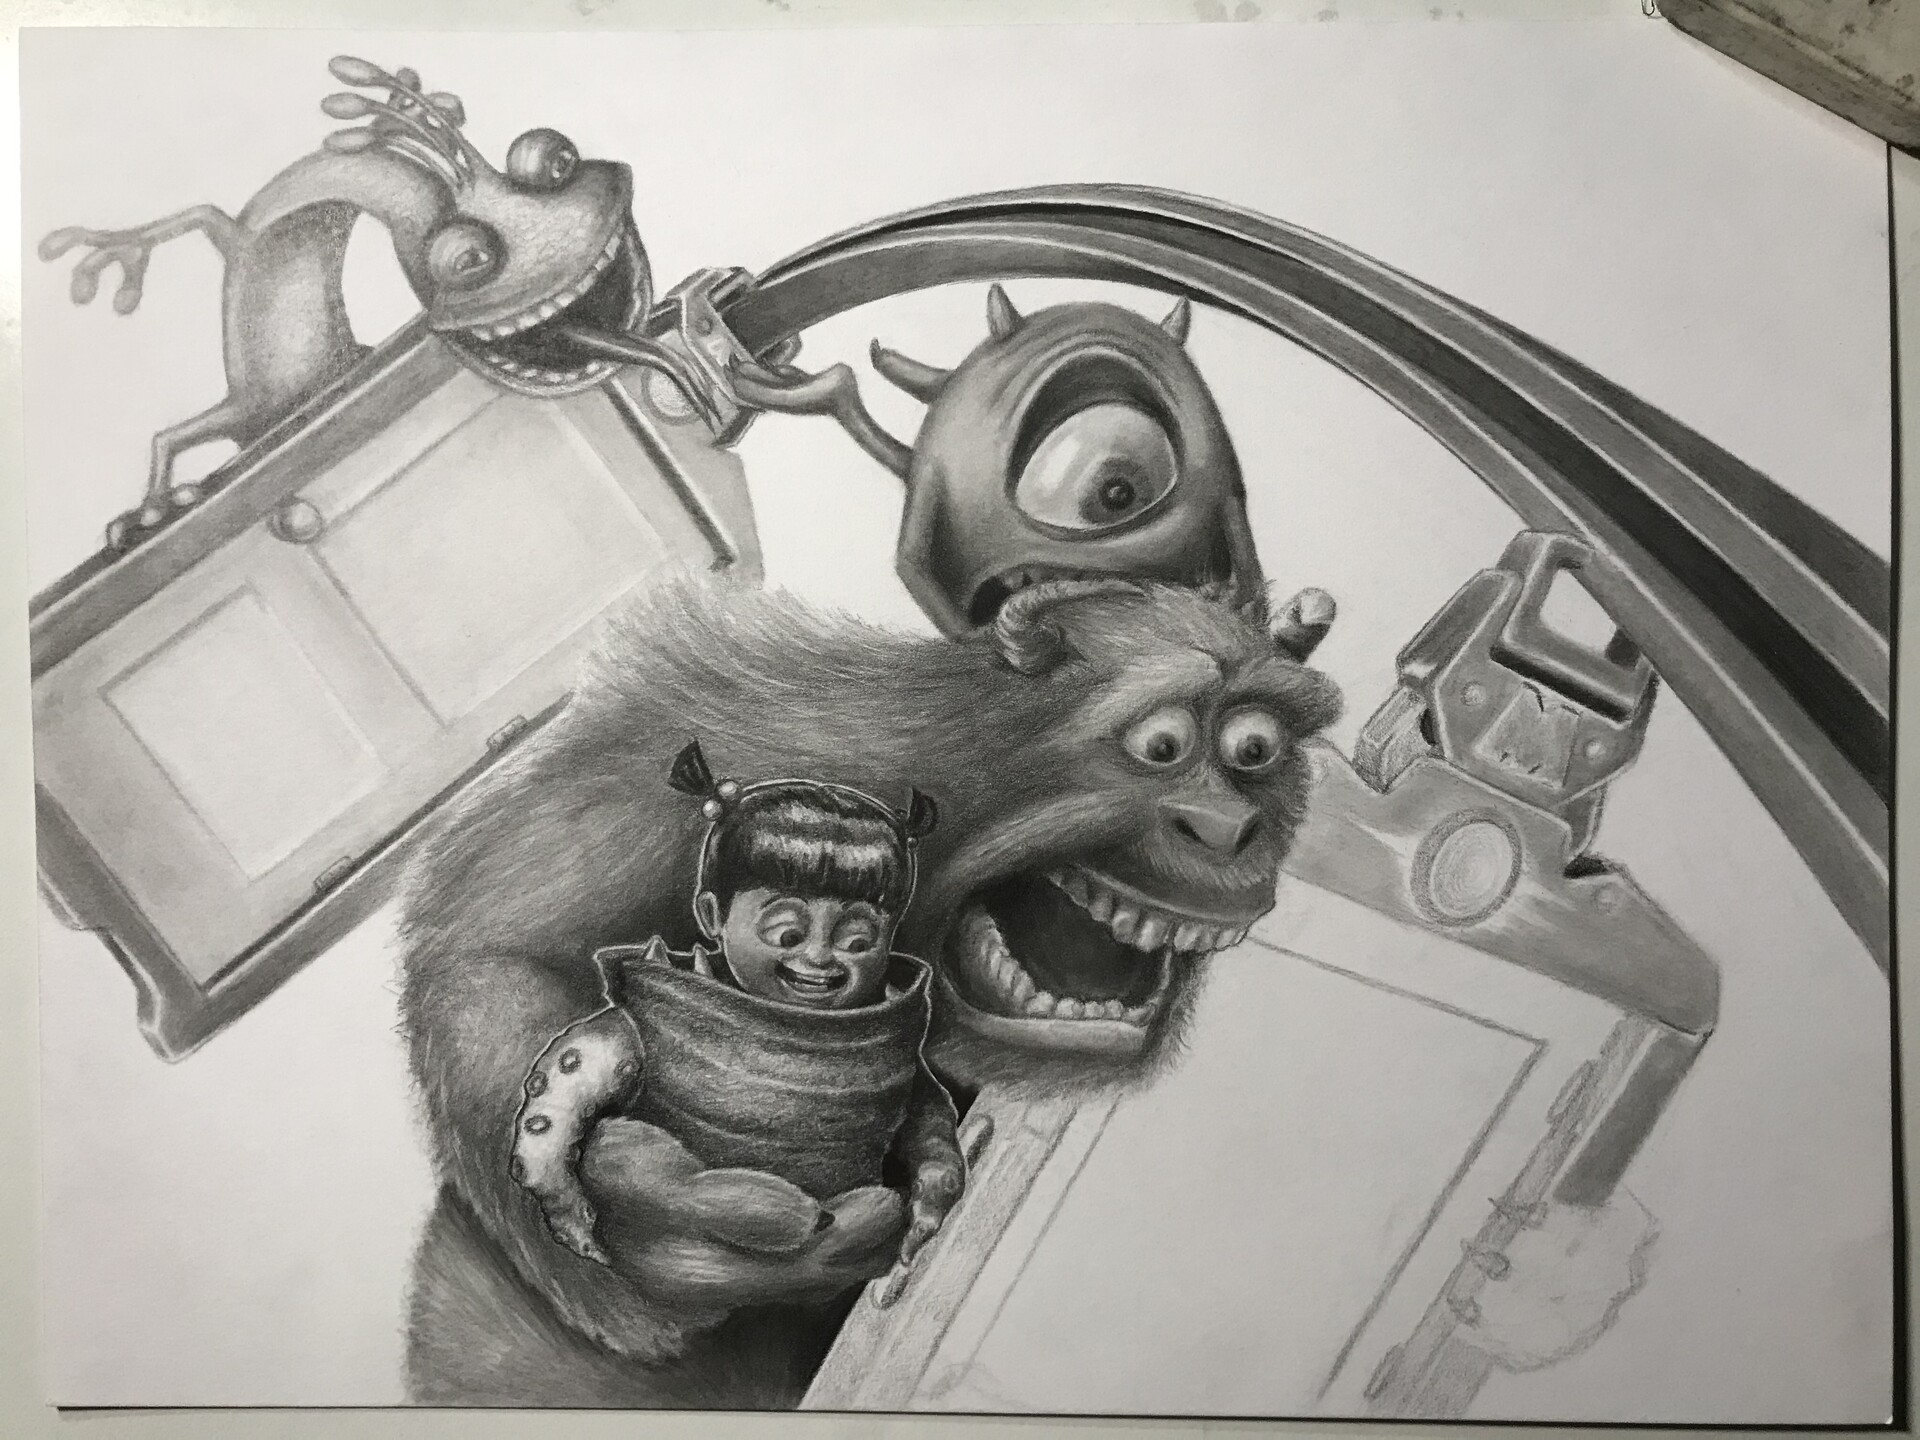 Mike & Sully -doodling still work in progress#tuestayart #pixar